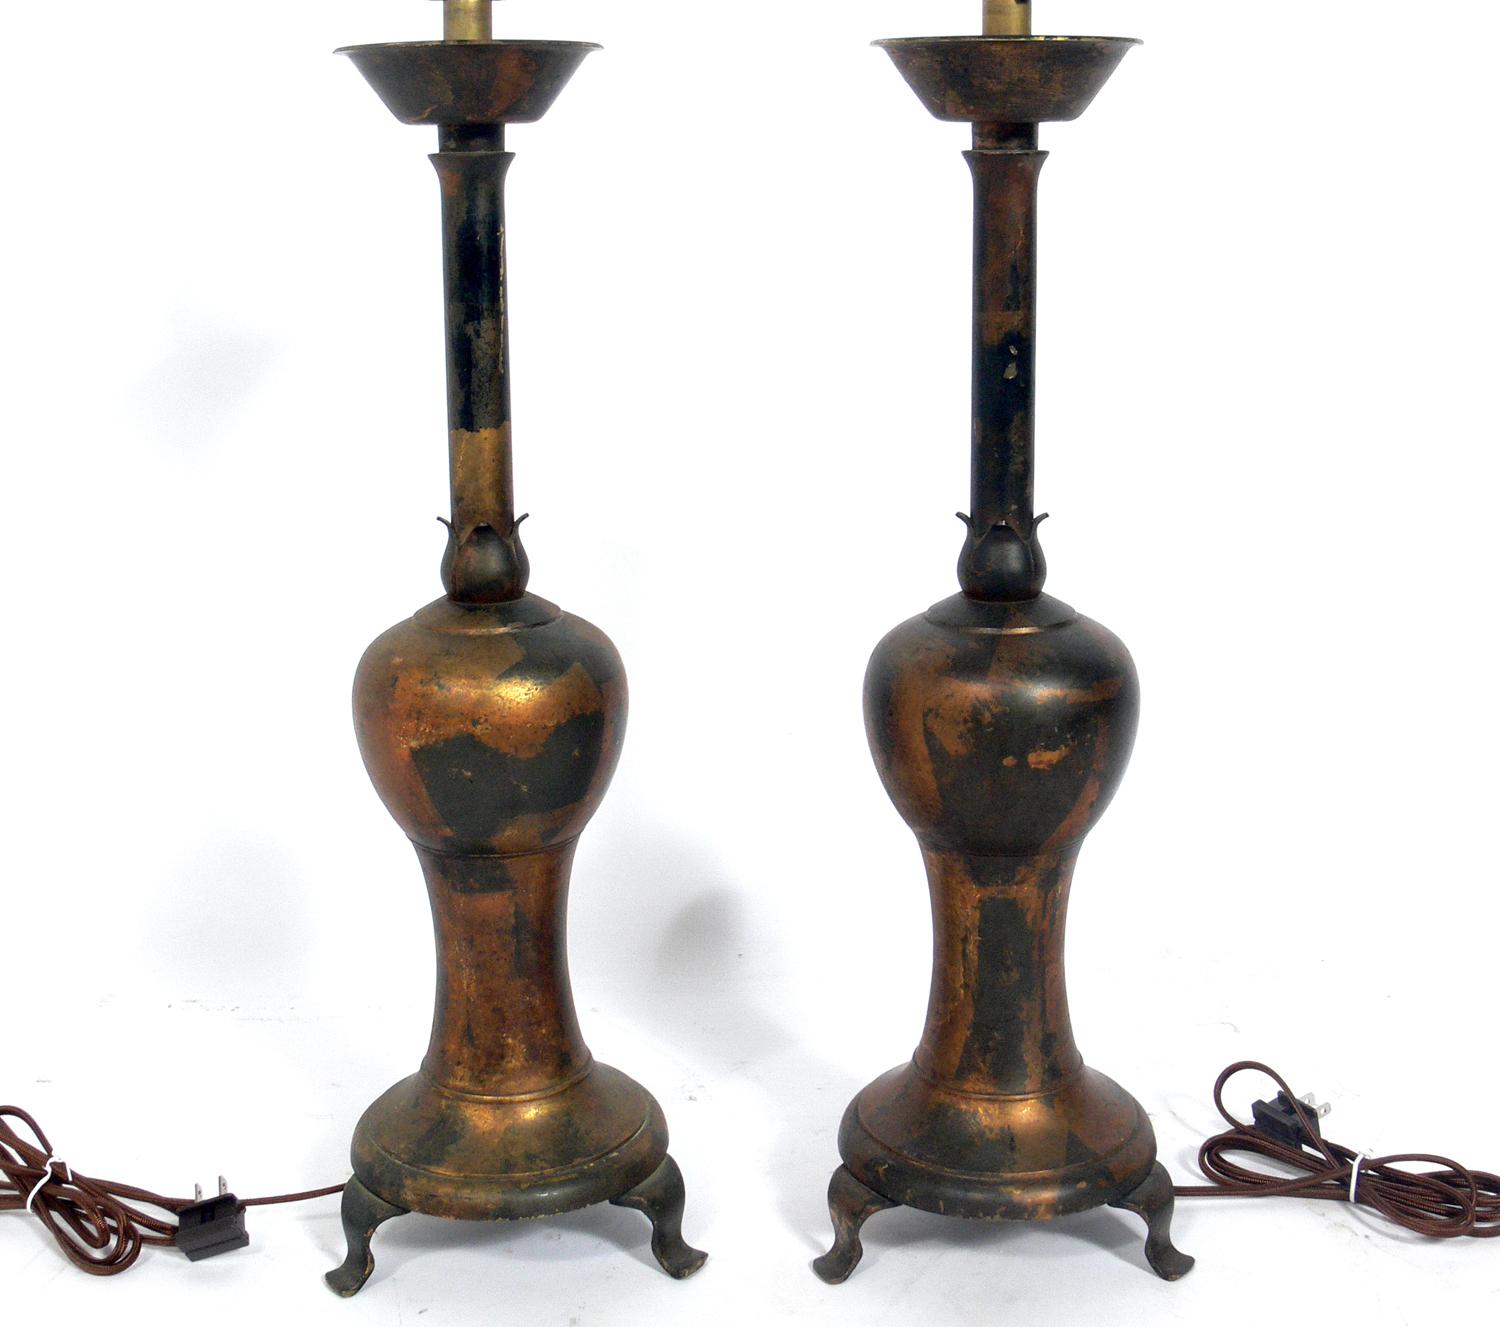 Zwei asiatische Lampen aus vergoldetem Metall, wahrscheinlich chinesisch, um 1950, möglicherweise früher. Sie wurden neu verkabelt und sind betriebsbereit. Der unten angegebene Preis beinhaltet die Farbtöne.